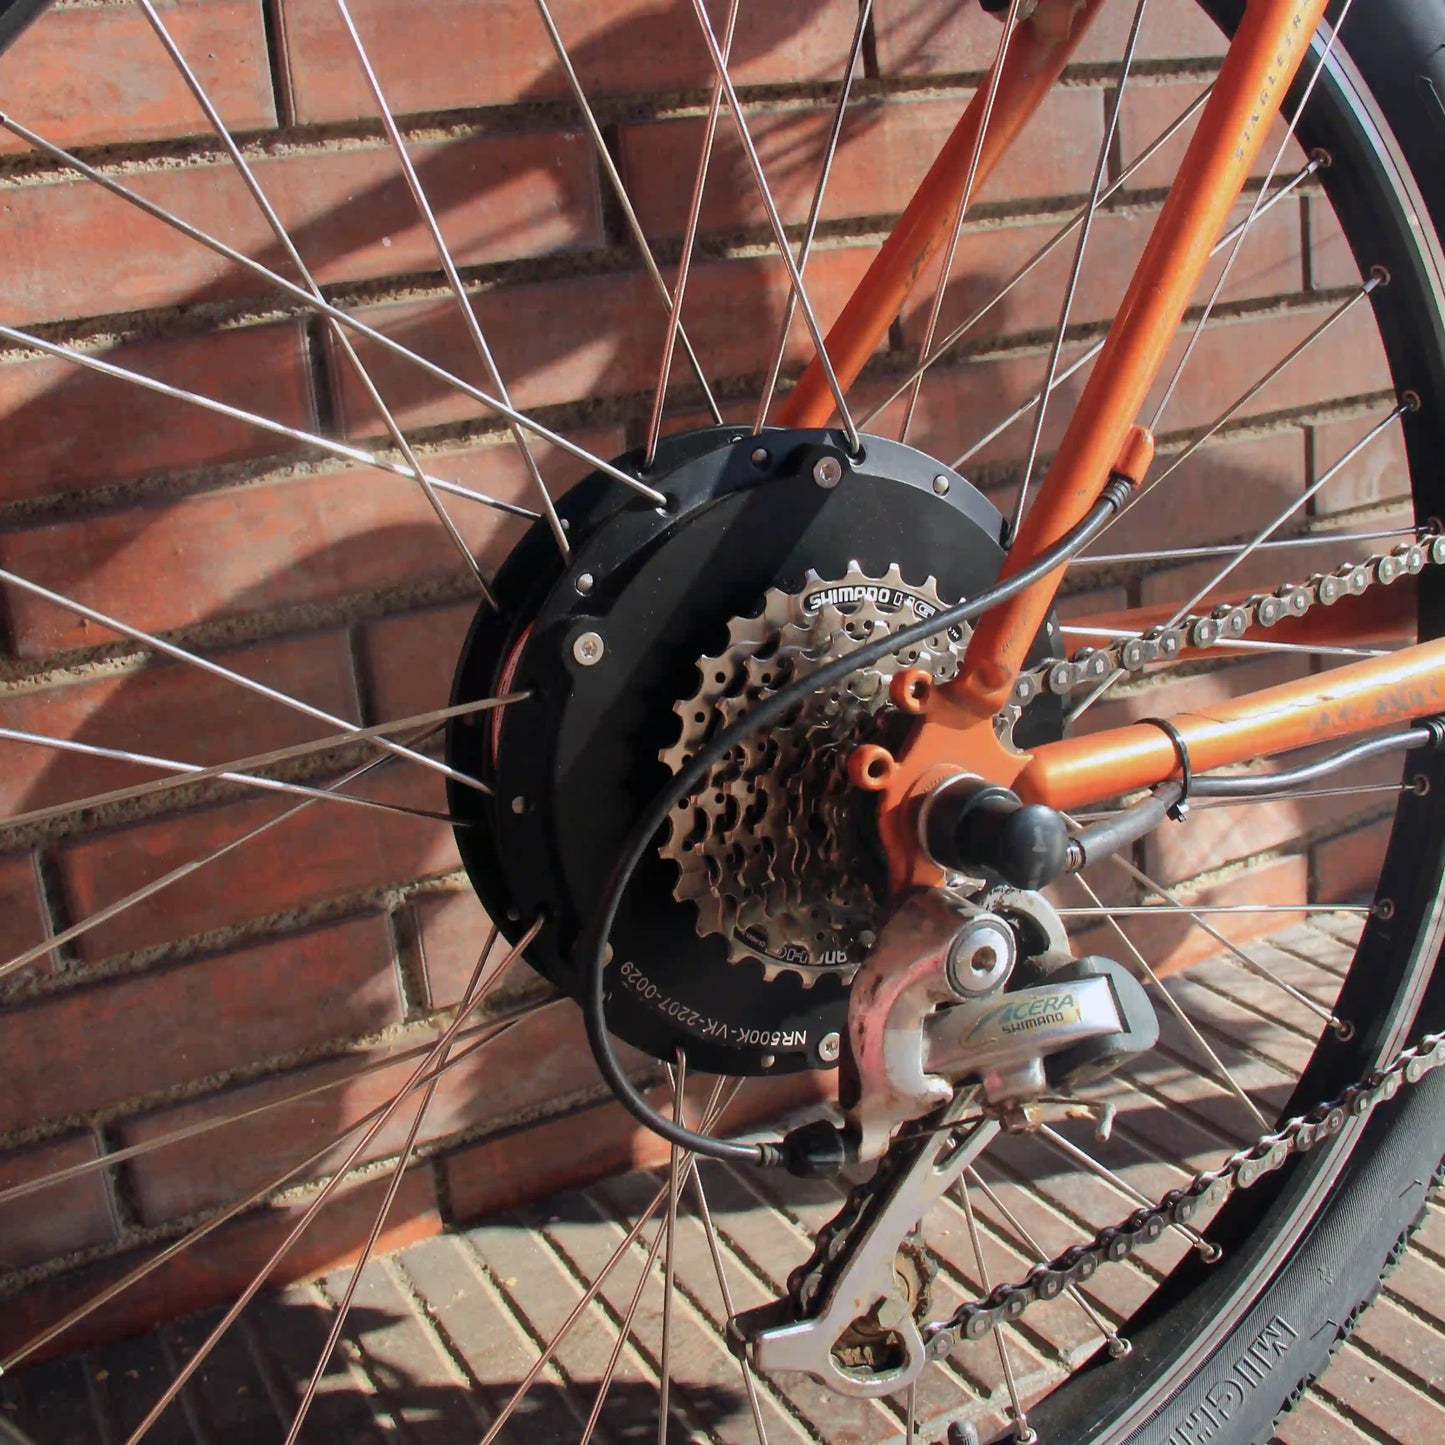 Kit electrificación para bici de montaña: motor Freerider rueda trasera con batería